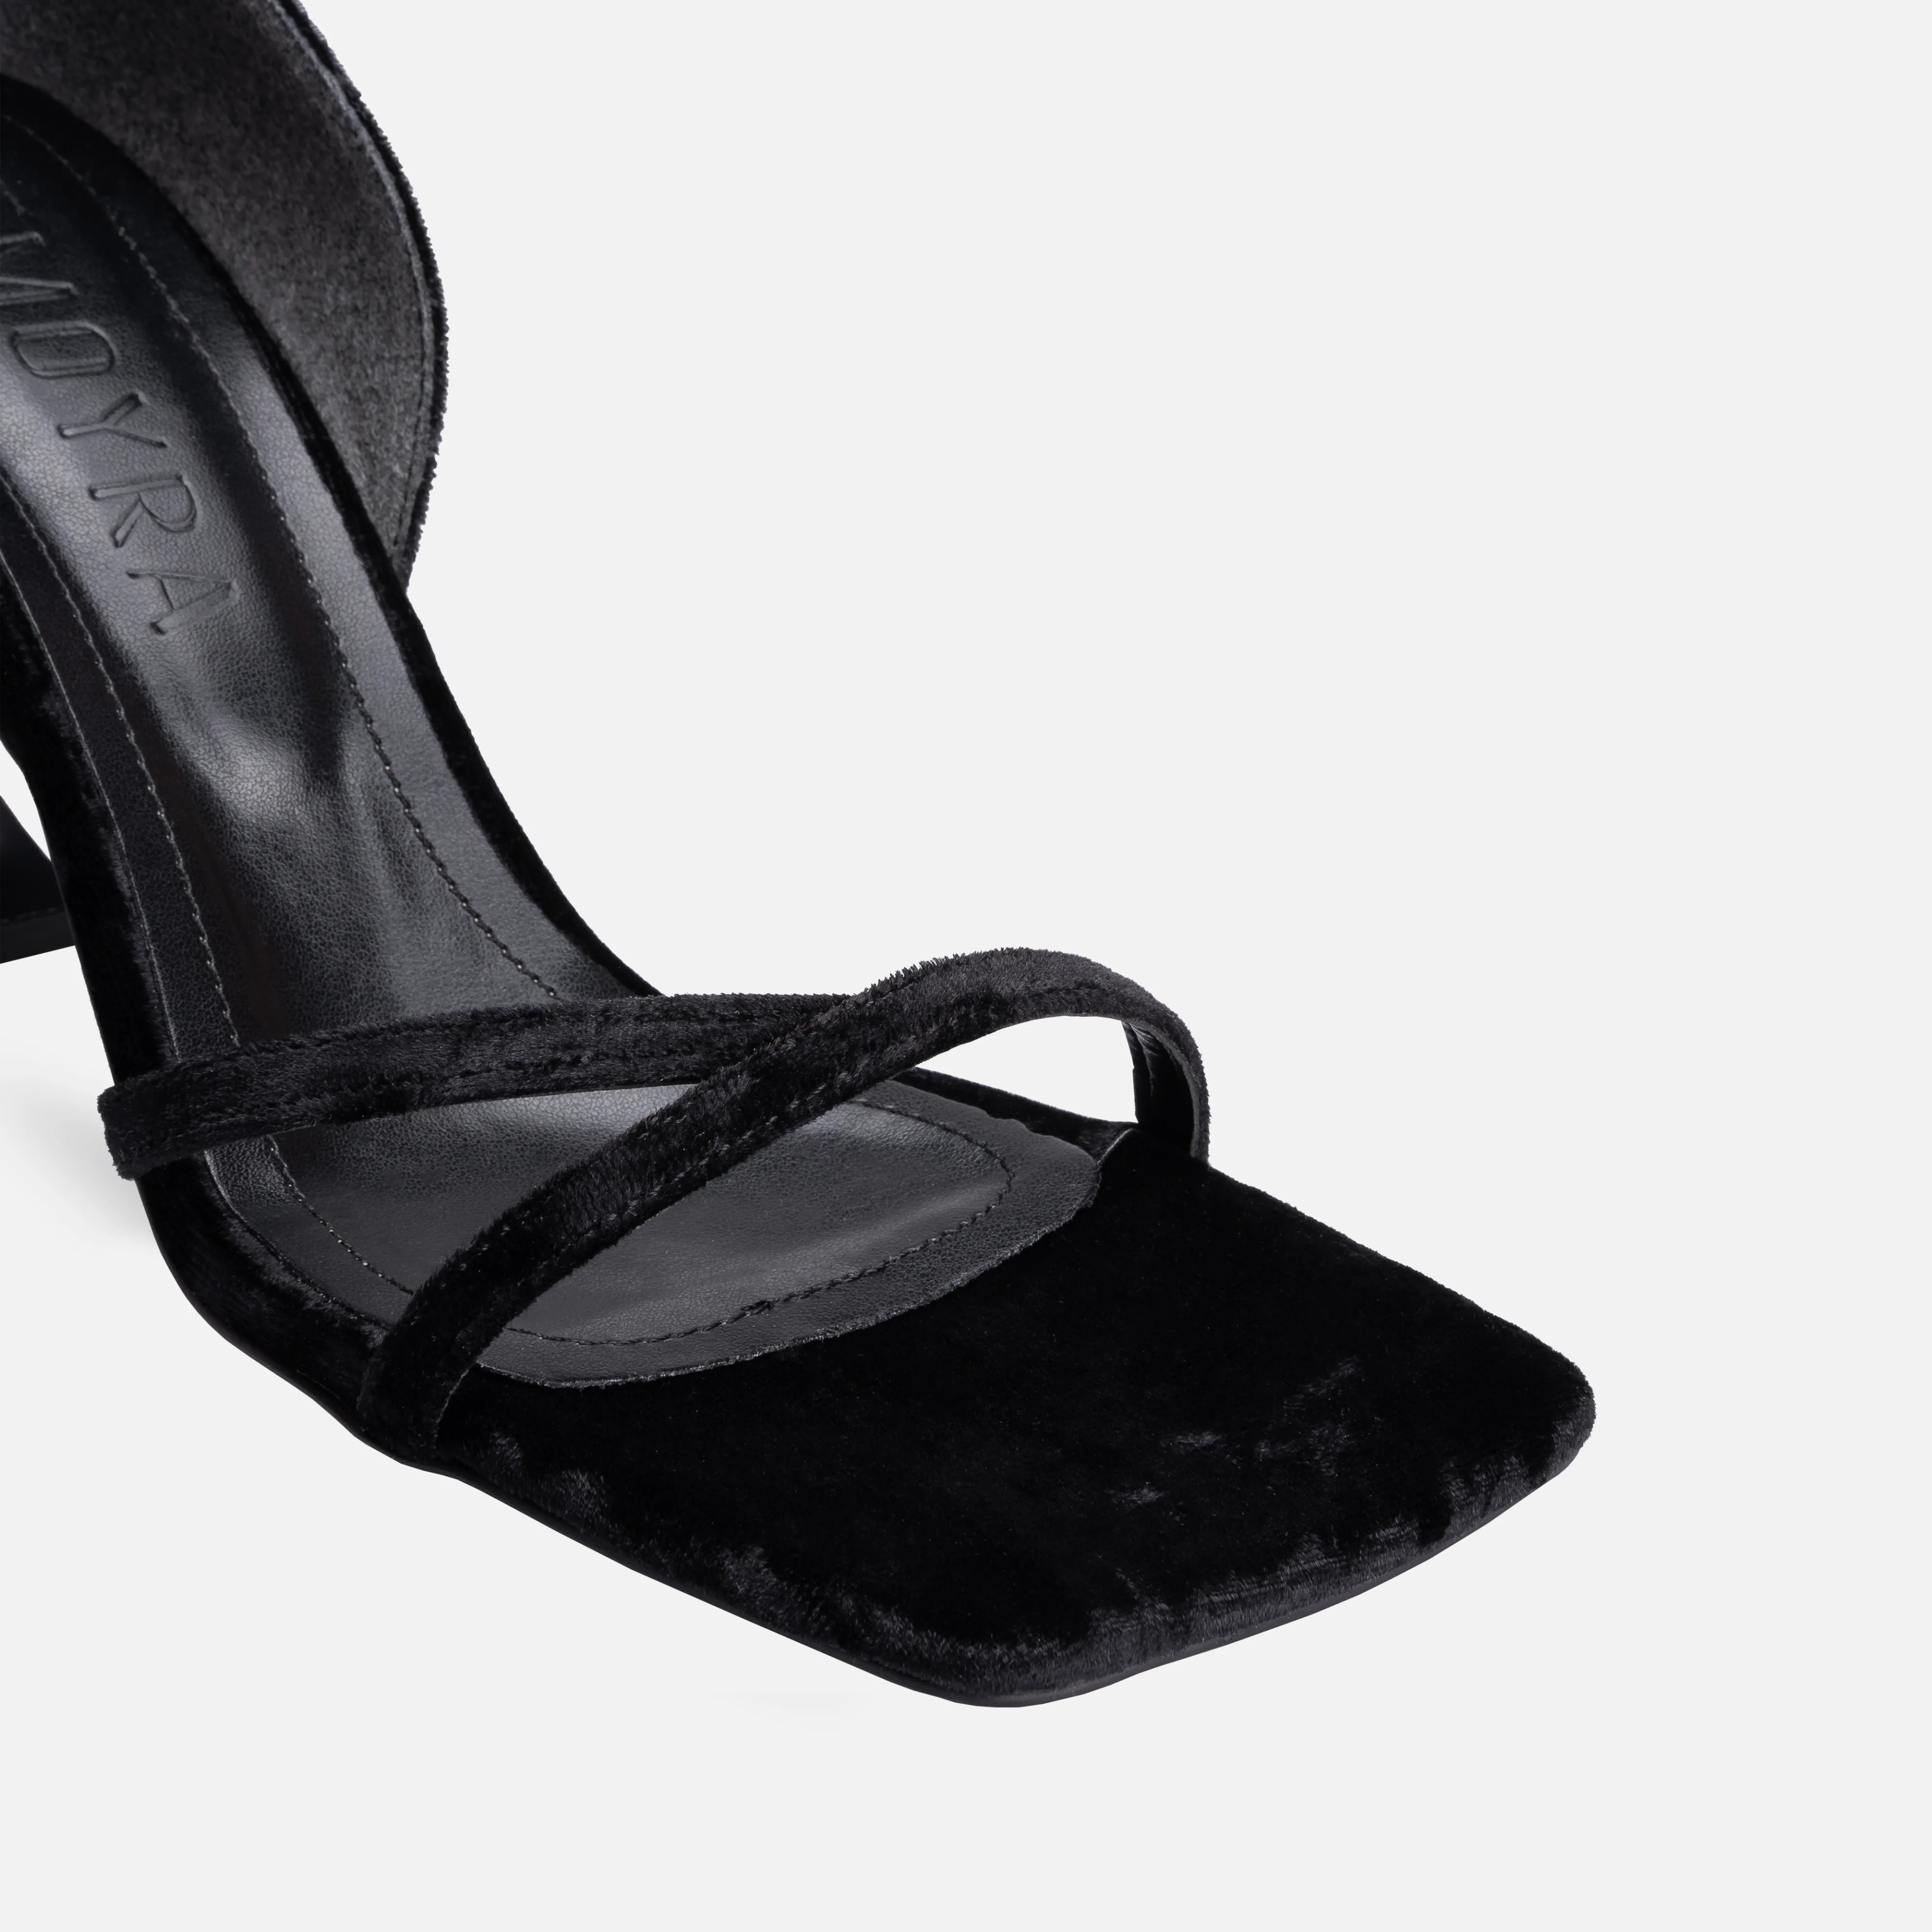 Kadife İnce Yüksek Topuklu Ayakkabı - Siyah